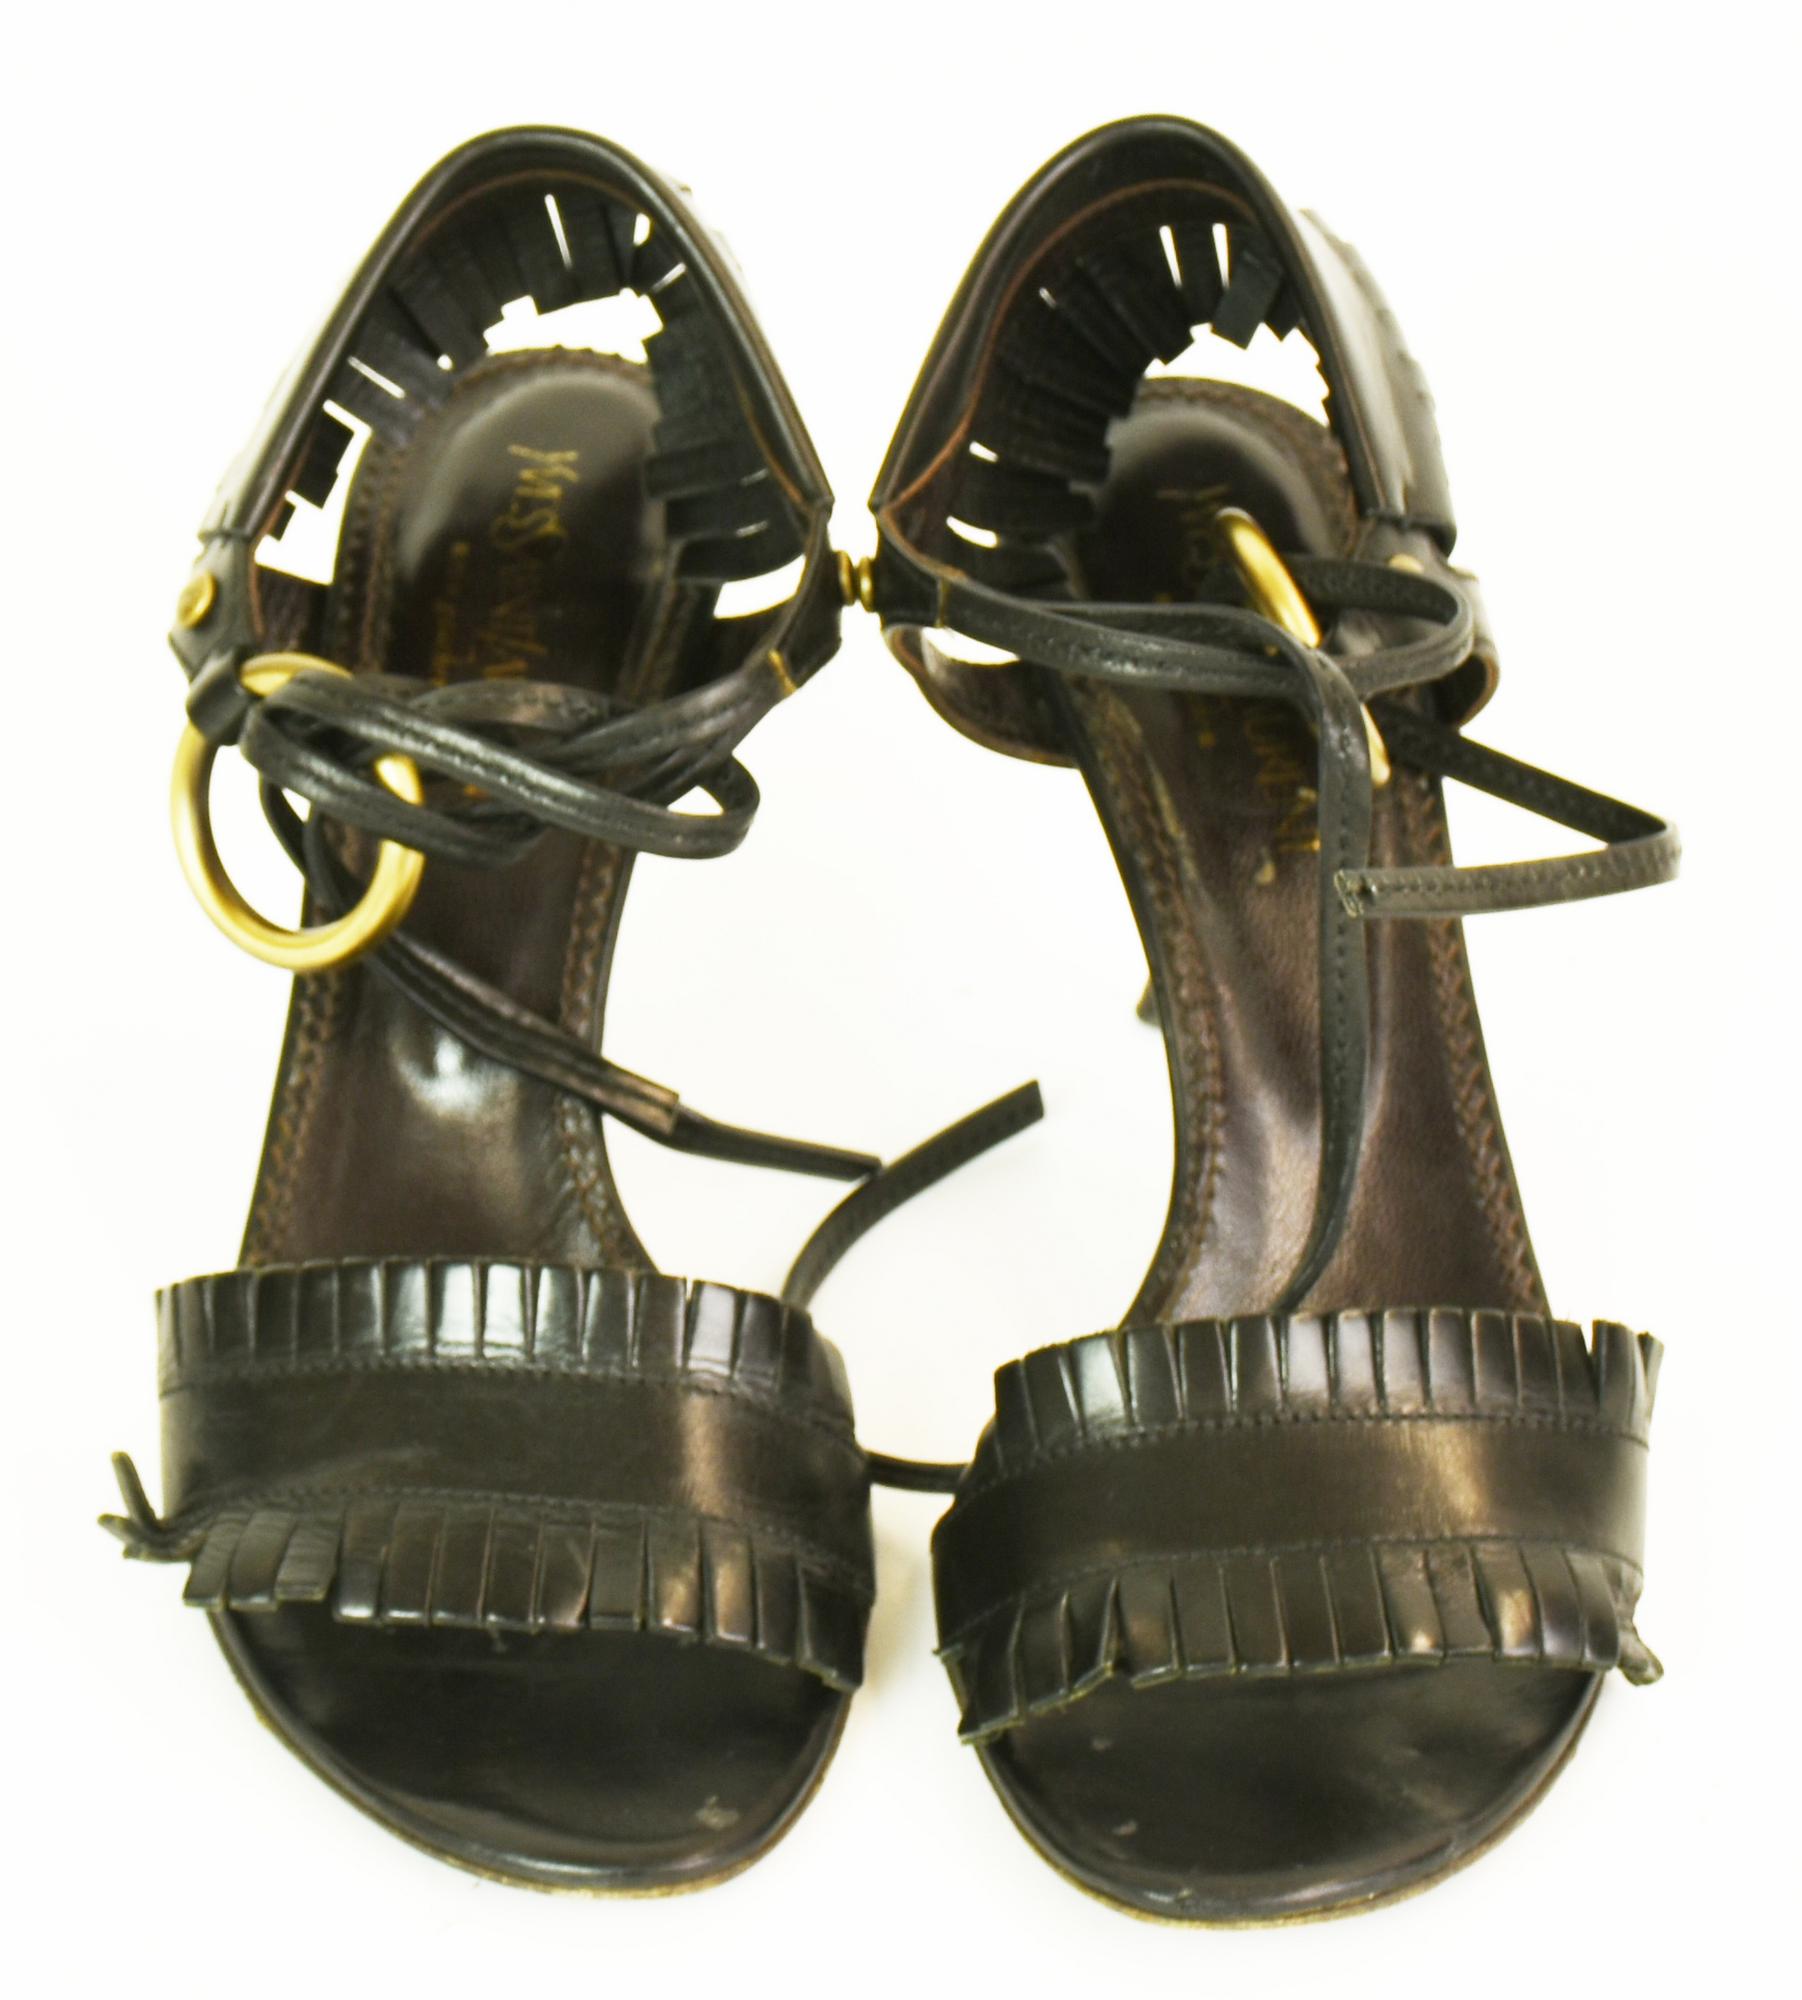 Yves Saint Laurent Rive Gauche SANDALS Description : Sandals in black leather...